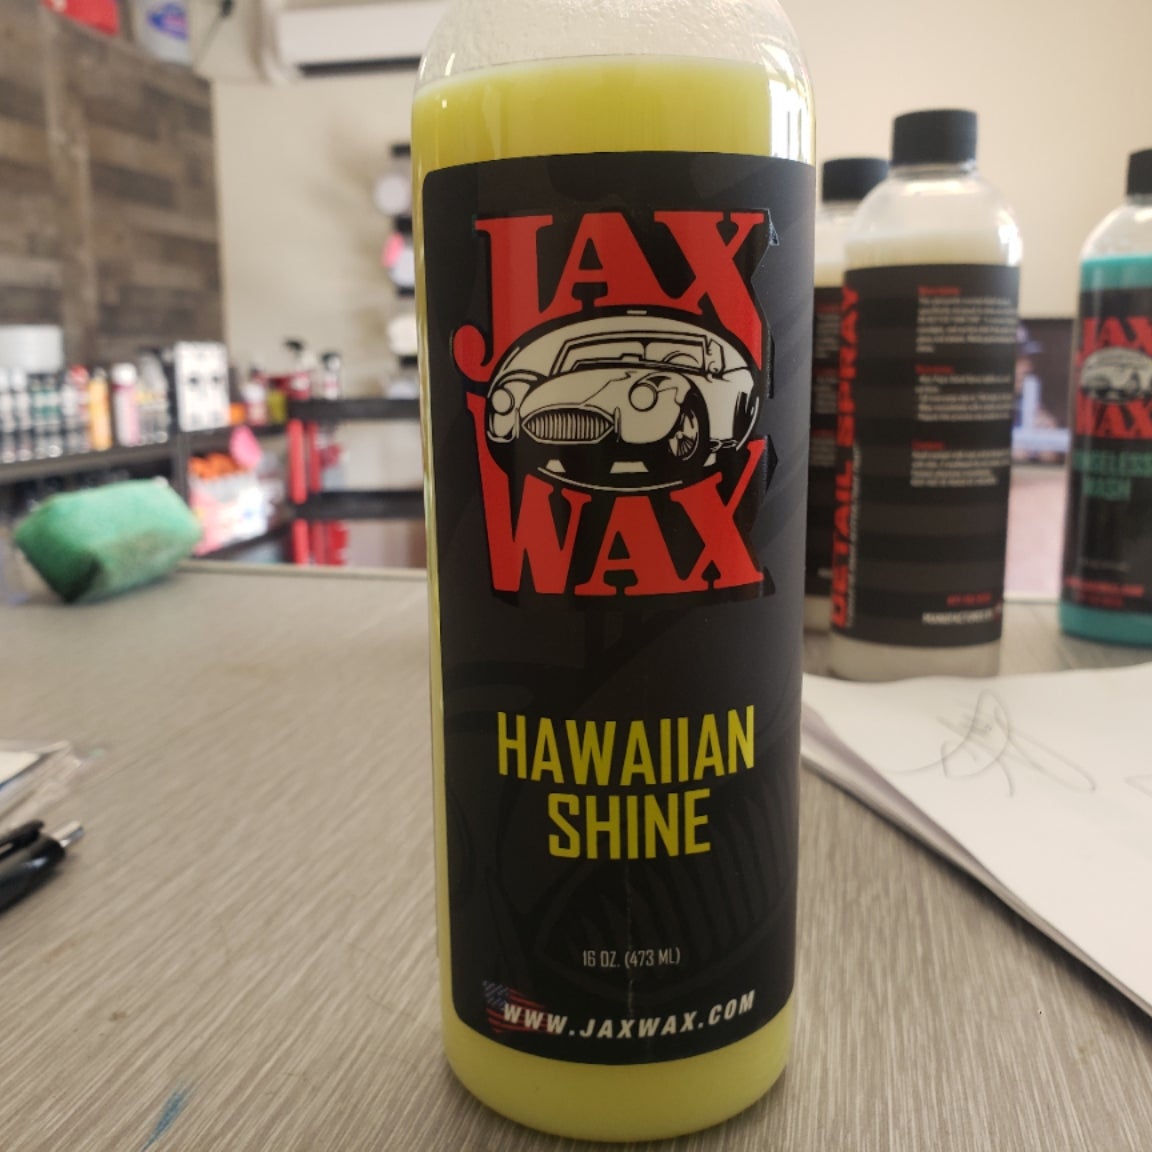 Jax Wax, Hawaiian Shine, Spray Wax